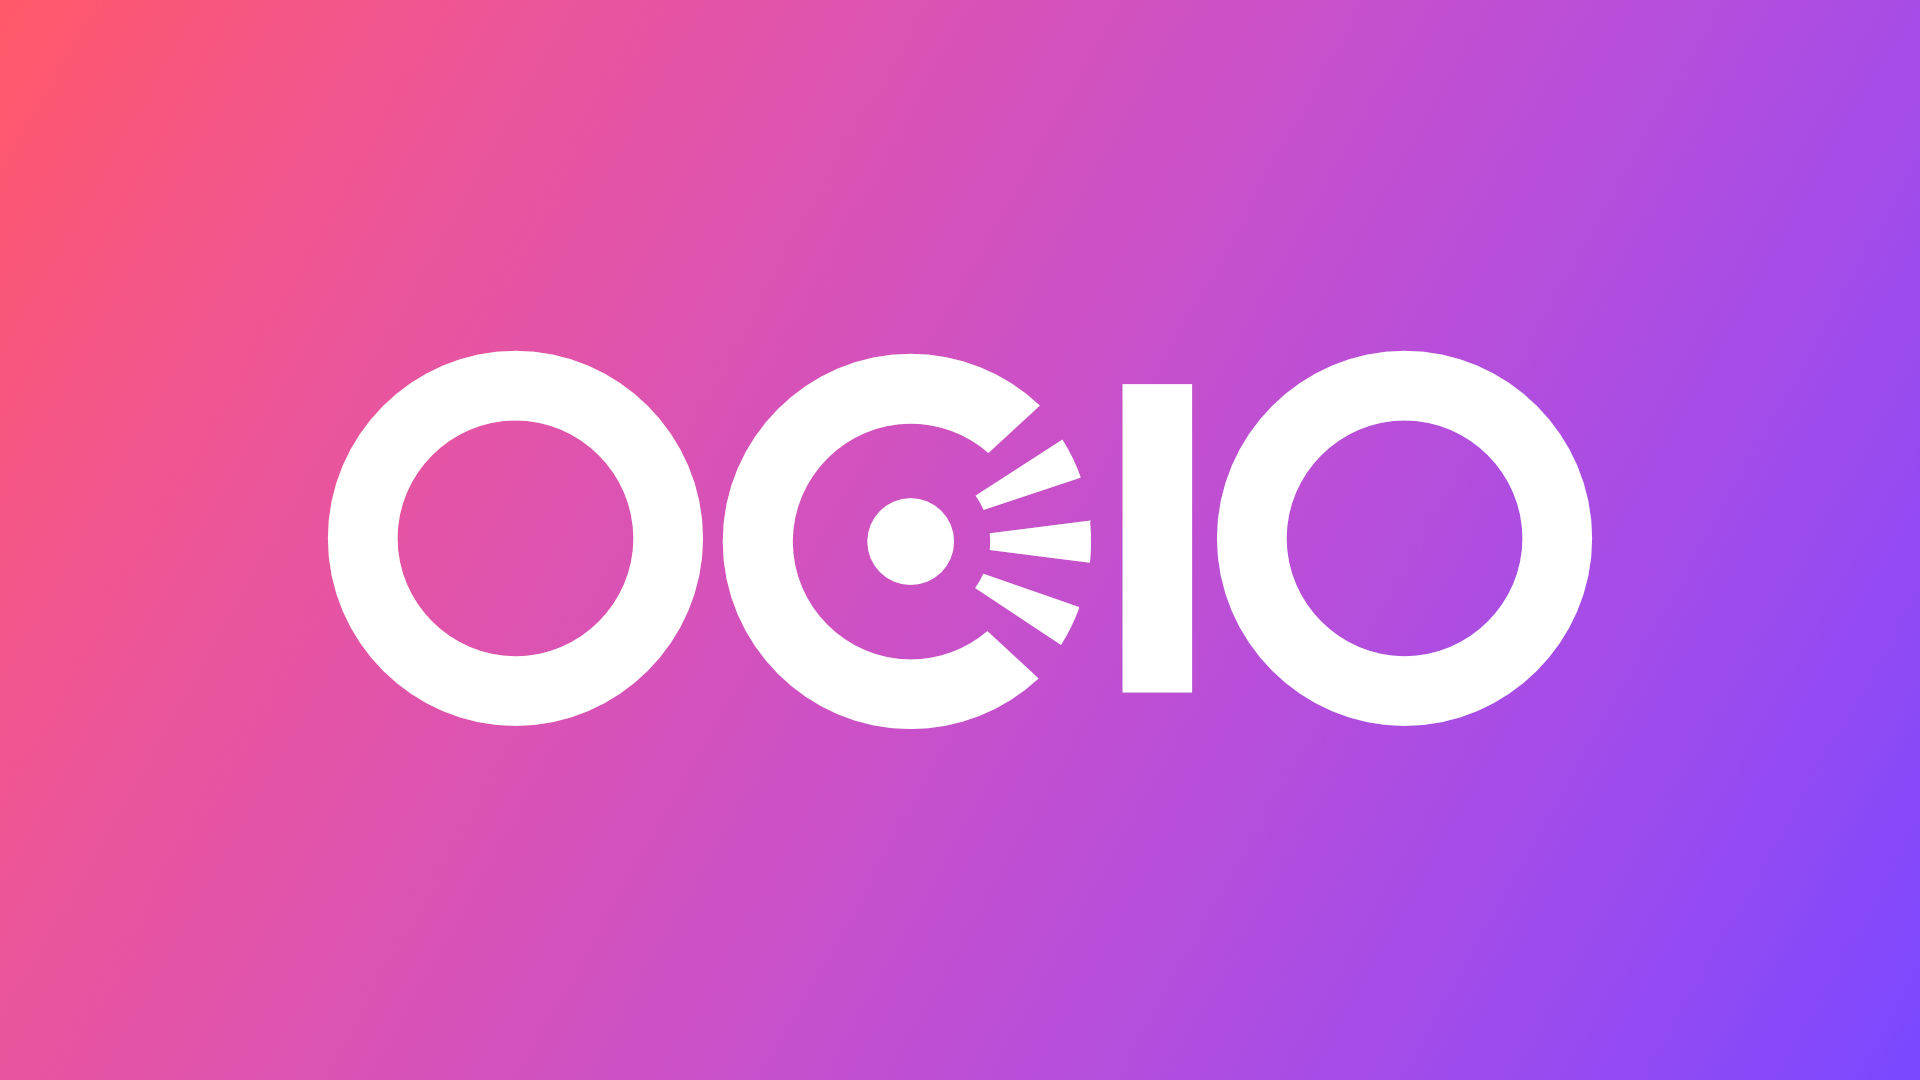 The OCIO logo